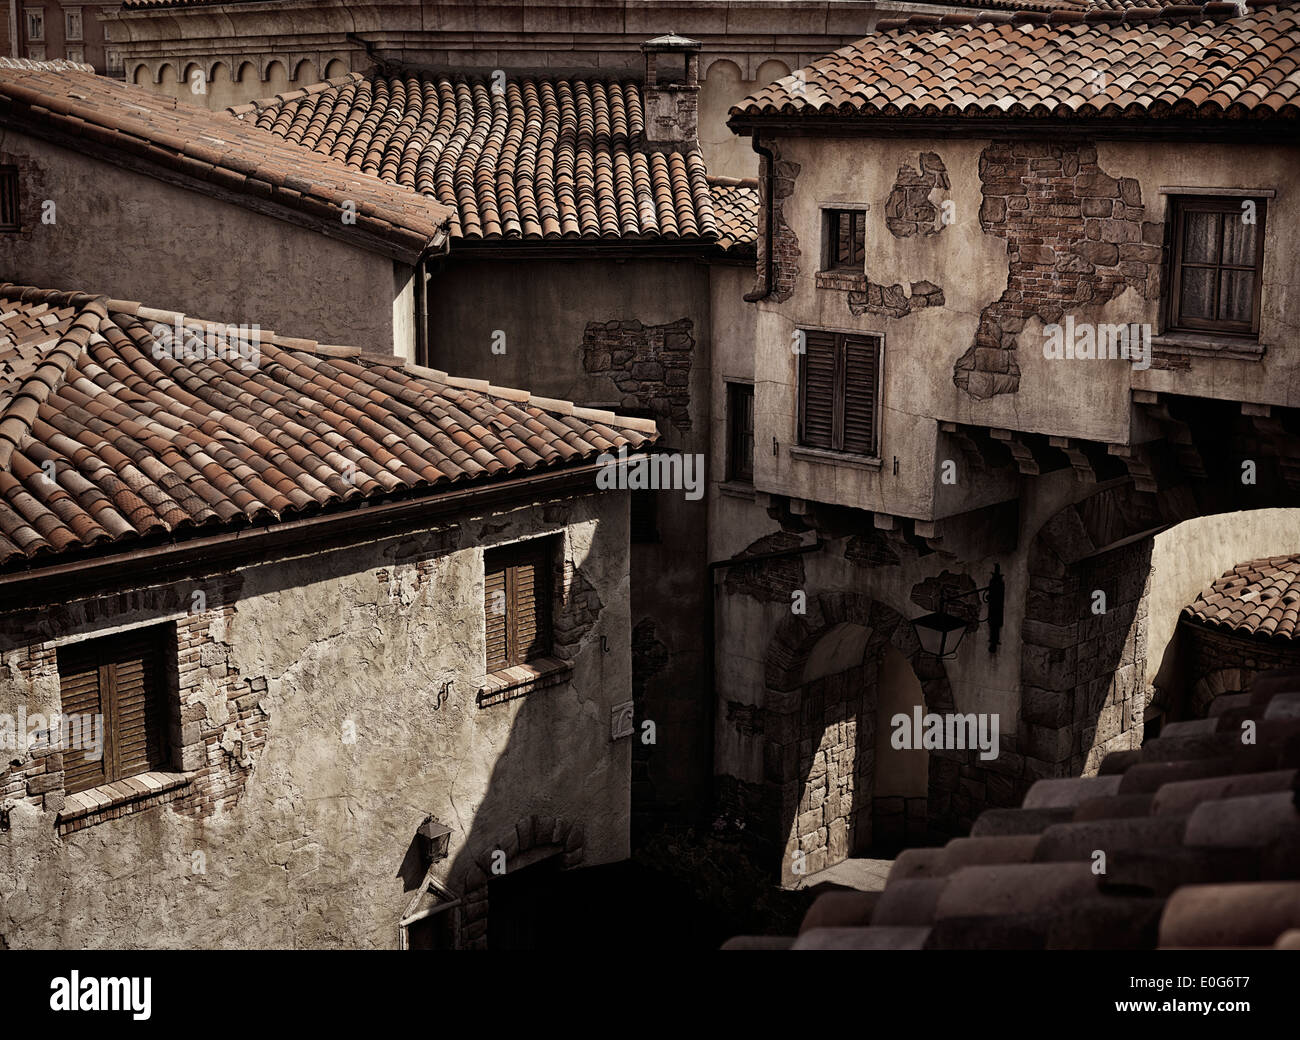 Rustico vecchie case con tetti di tegole, antica architettura in stile veneziano, dai toni seppia Foto Stock